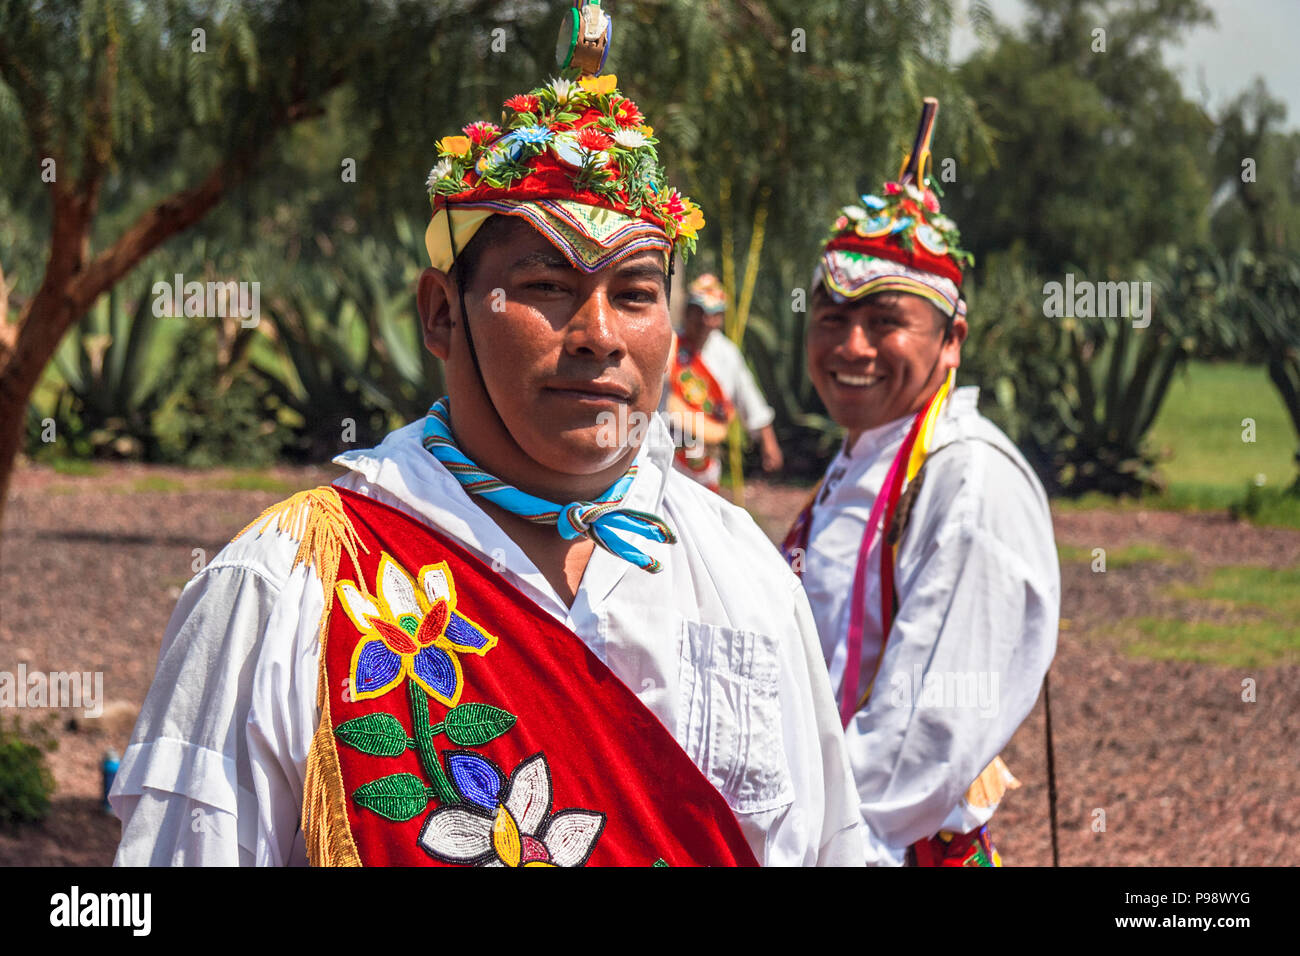 Teotihuacan, Mexique : Portrait de Totonaques hommes habillés en vêtements traditionnels après avoir effectué les Voladores ou hommes volants nommé cérémonie une immobilisation incorporelle Banque D'Images